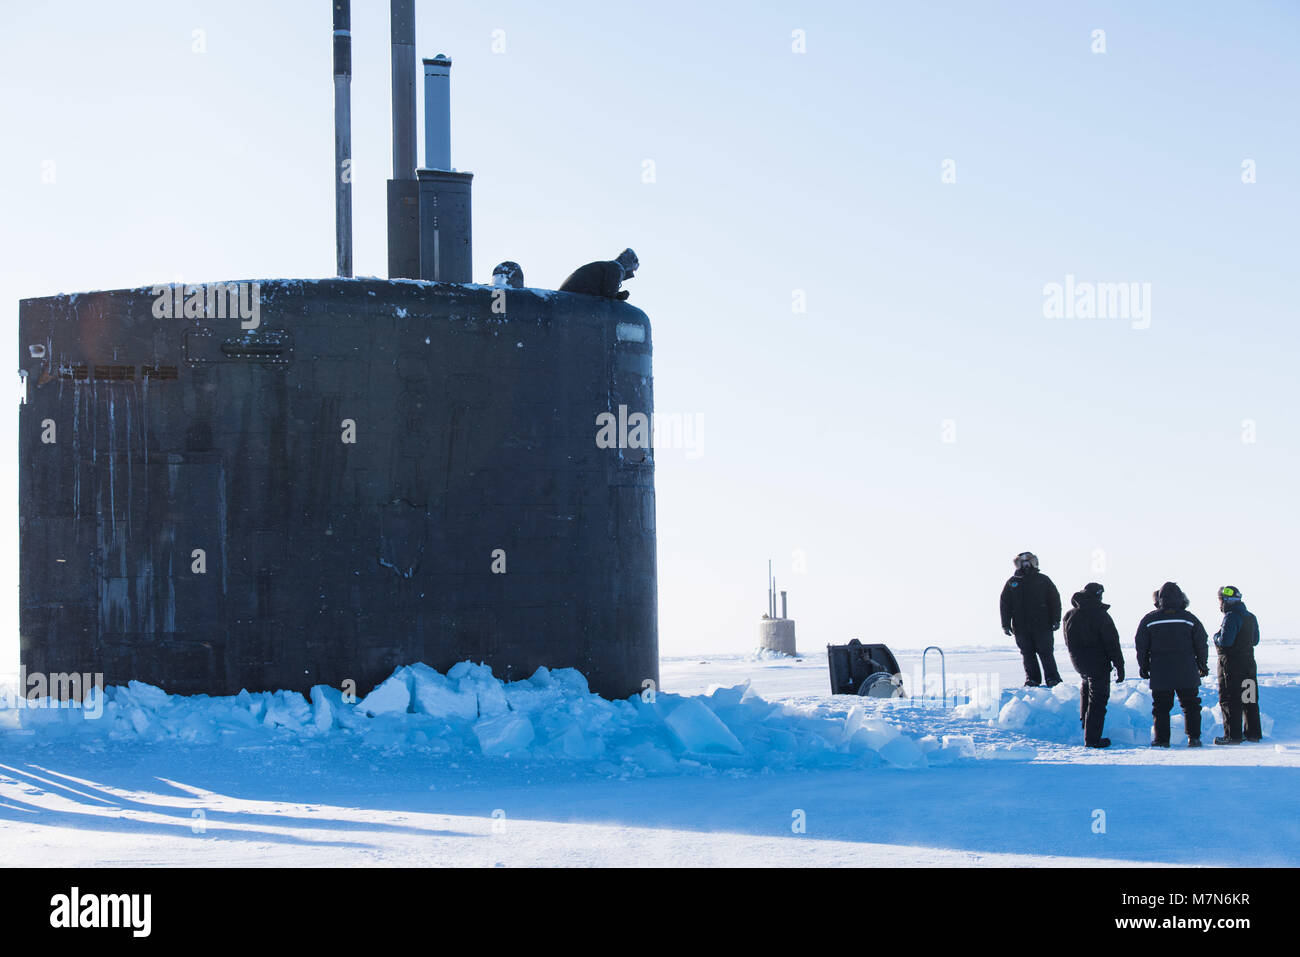 180310-N-LY 160-628 Ice Camp Skate (9. März 2018) - Los Angeles-Klasse schnell-Angriffs-U-Boot USS Hartford SSN 768 Oberflächen durch das Eis März 9, 2018 zur Unterstützung der Ice-Übung (ICEX) 2018. ICEX 2018 ist ein 5-wöchigen Übung, die Marine ihre Einsatzbereitschaft in der Arktis, die Erfahrung in der Region, Vorauszahlung Verständnis der arktischen Umwelt zu bewerten, und ihre Beziehungen zu anderen Dienstleistungen, Verbündete und Partner Organisationen zu entwickeln. (U.S. Marine Foto von Massenkommunikation 2. Klasse Micheal H. Lee) Stockfoto